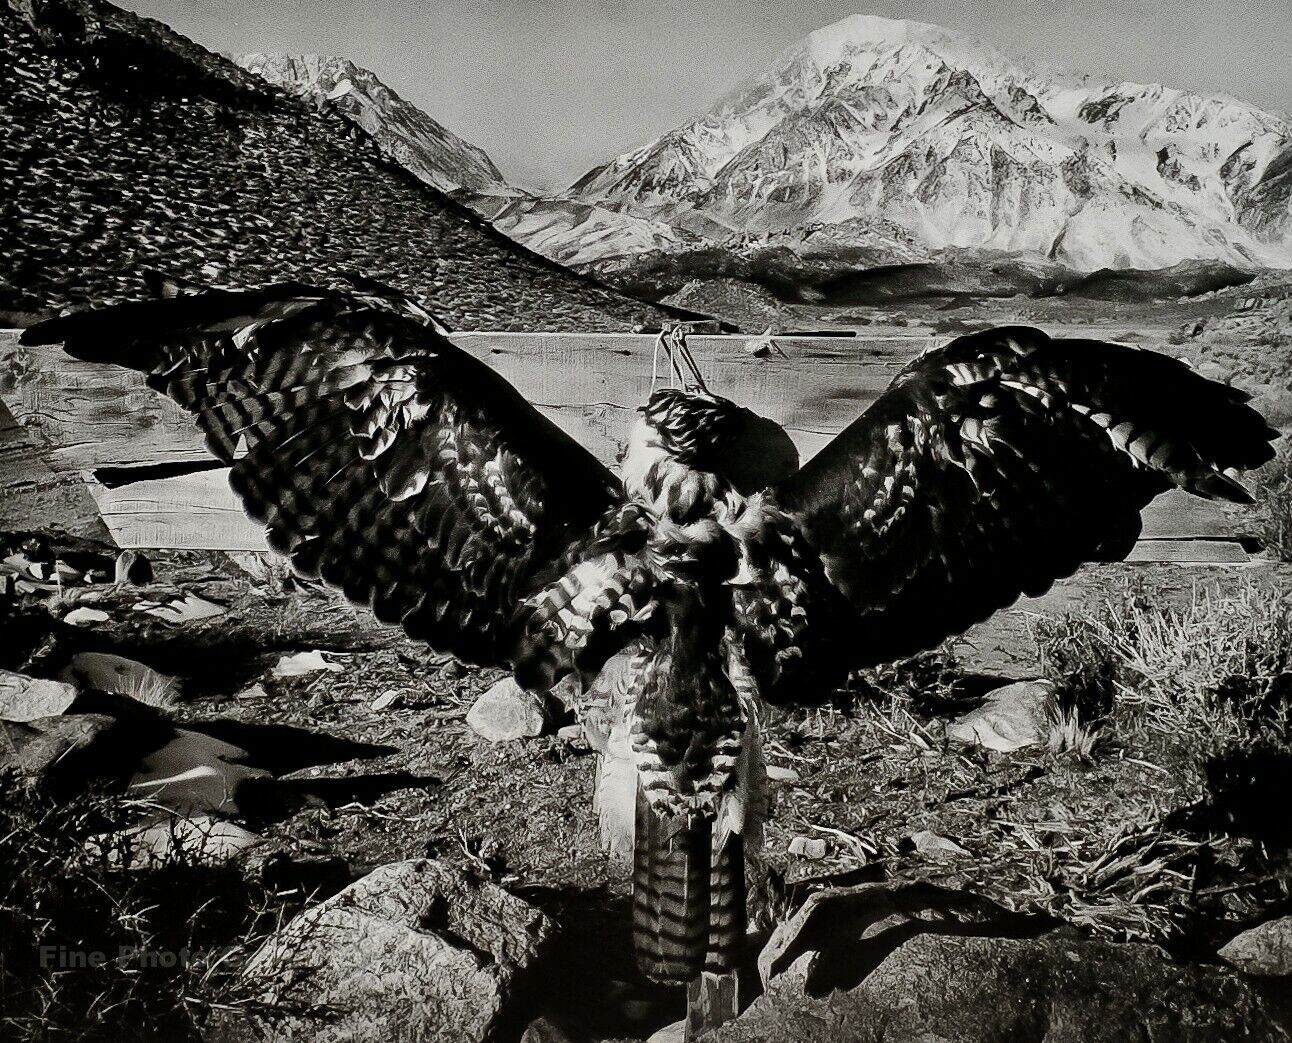 1935/72 ANSEL ADAMS Vintage Dead Hawk Sierra Mountain Landscape Photo Art 11X14